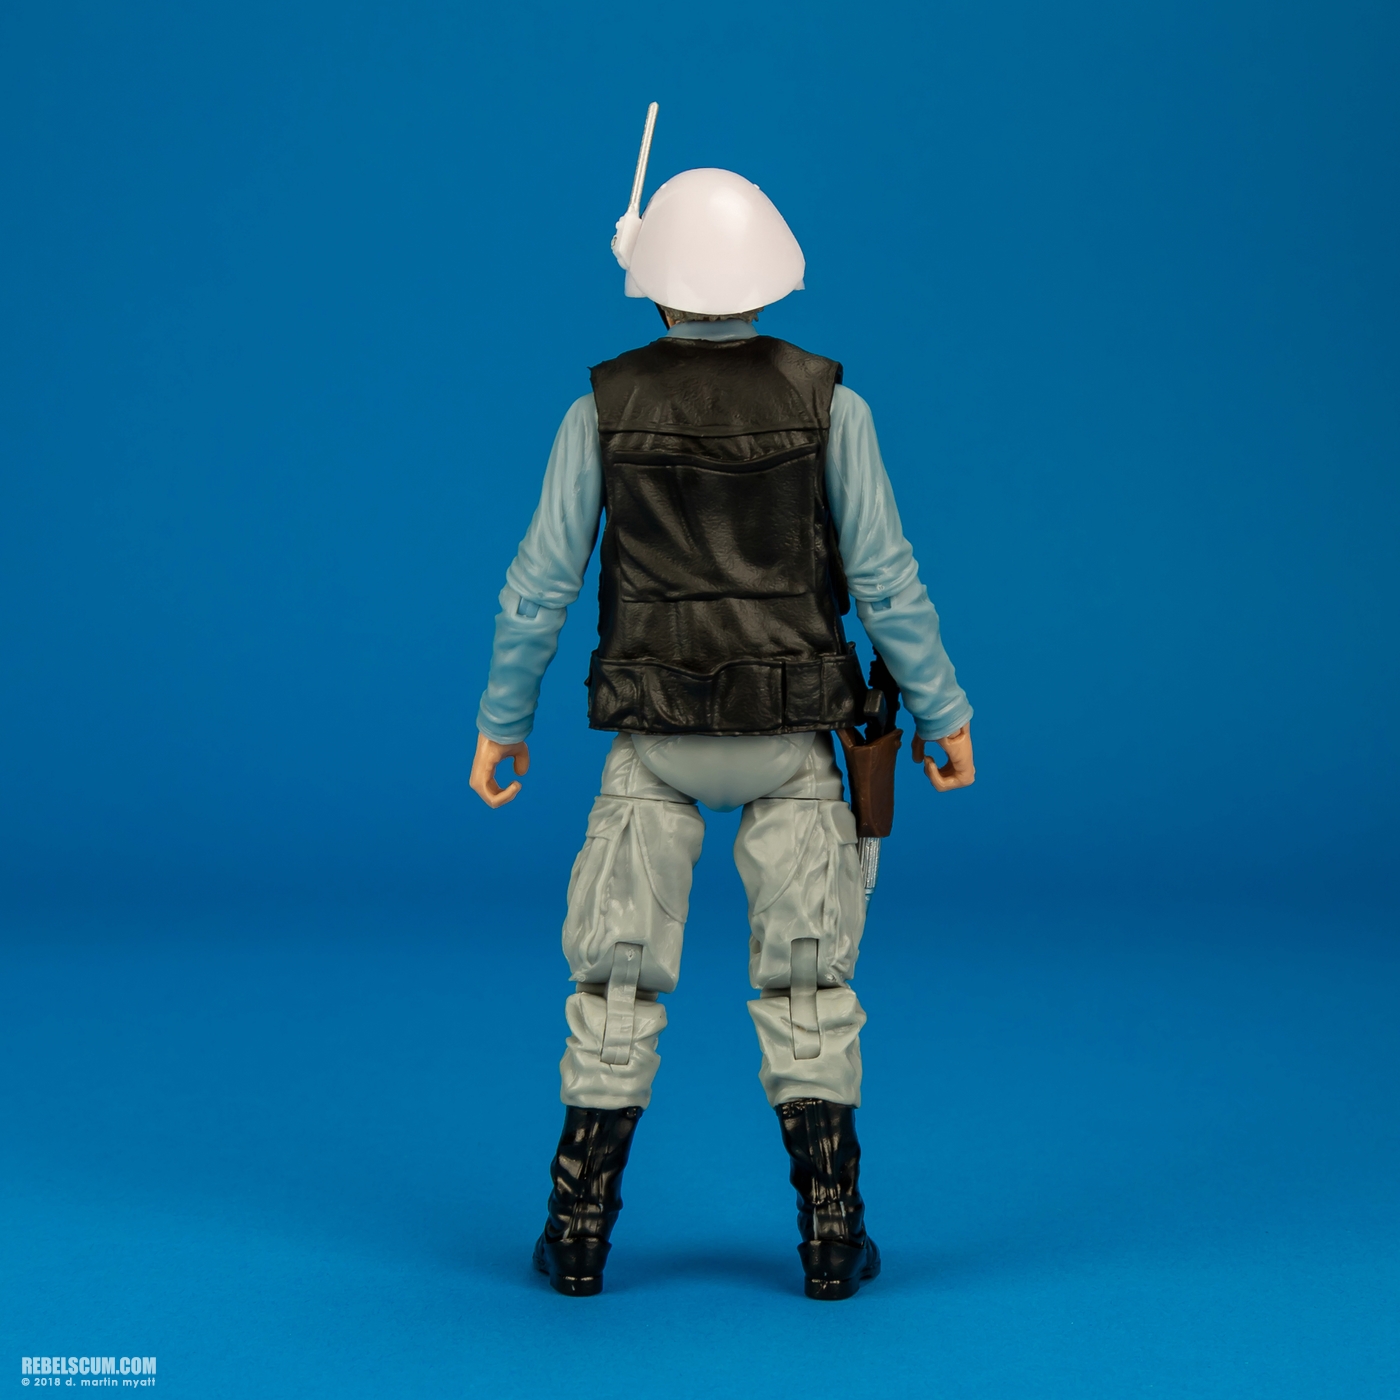 Rebel_Trooper-69-Star-Wars-The-Black-Series-6-inch-Hasbro-004.jpg